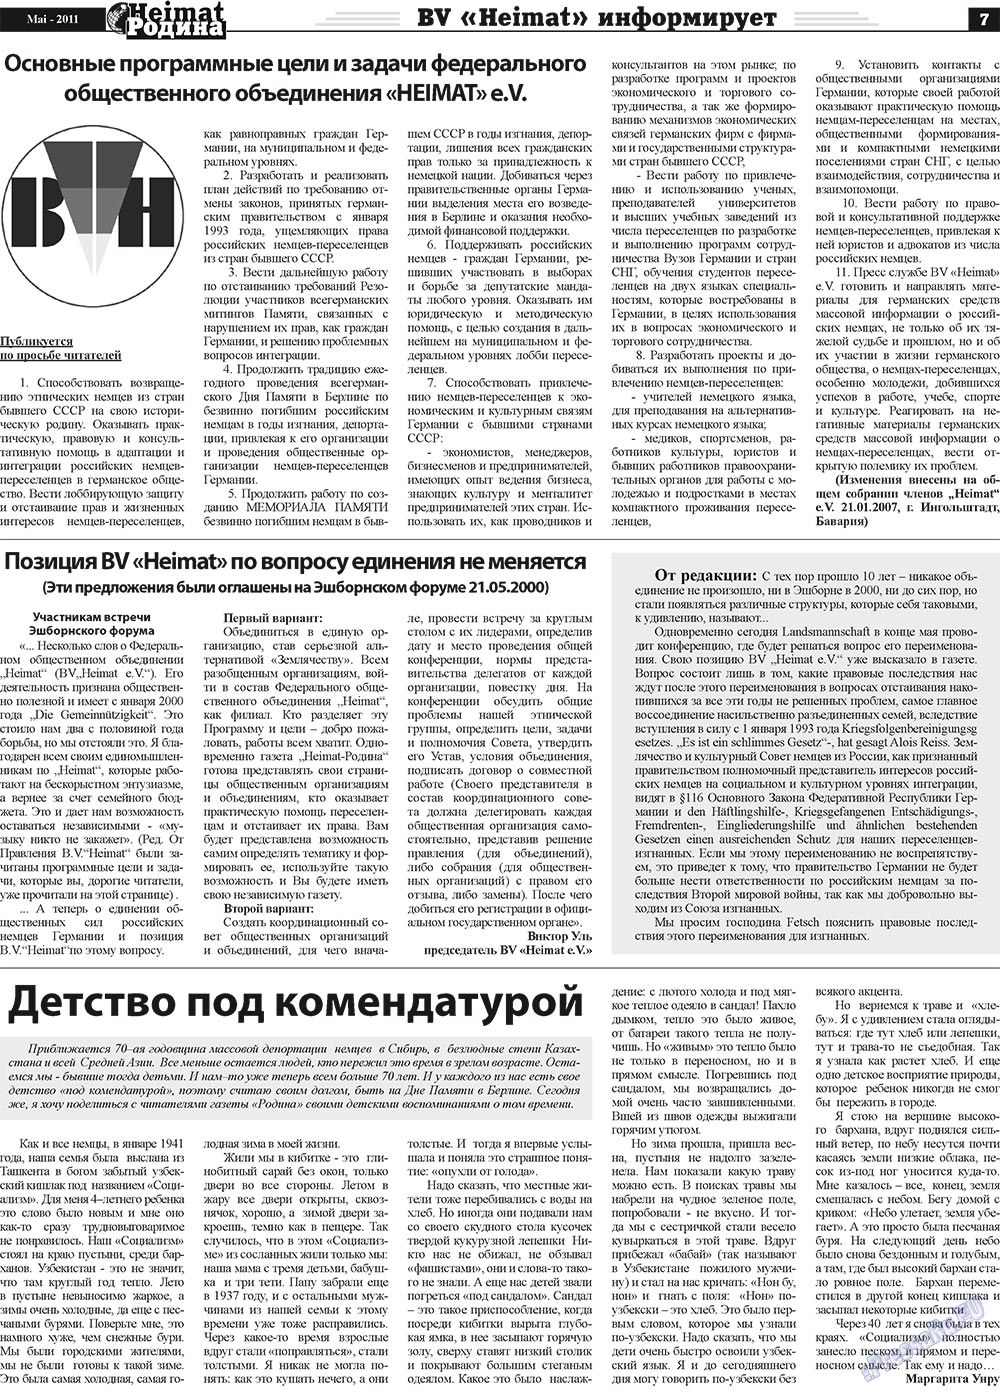 Heimat-Родина (газета). 2011 год, номер 5, стр. 7